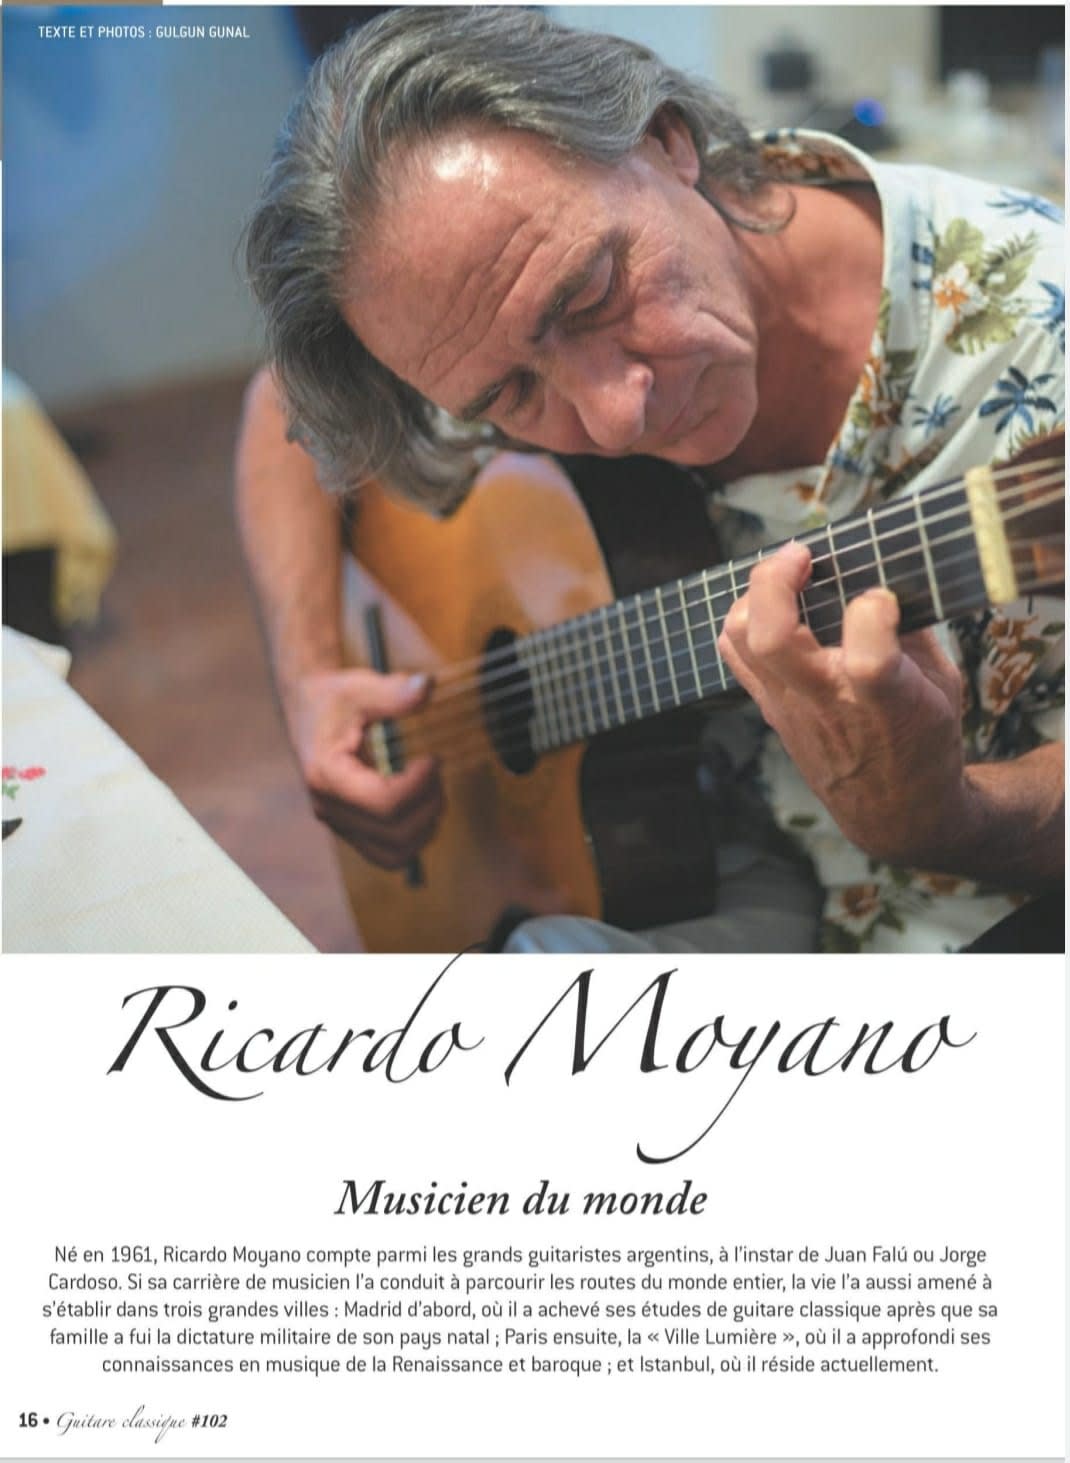 Guitare Classique Magazine